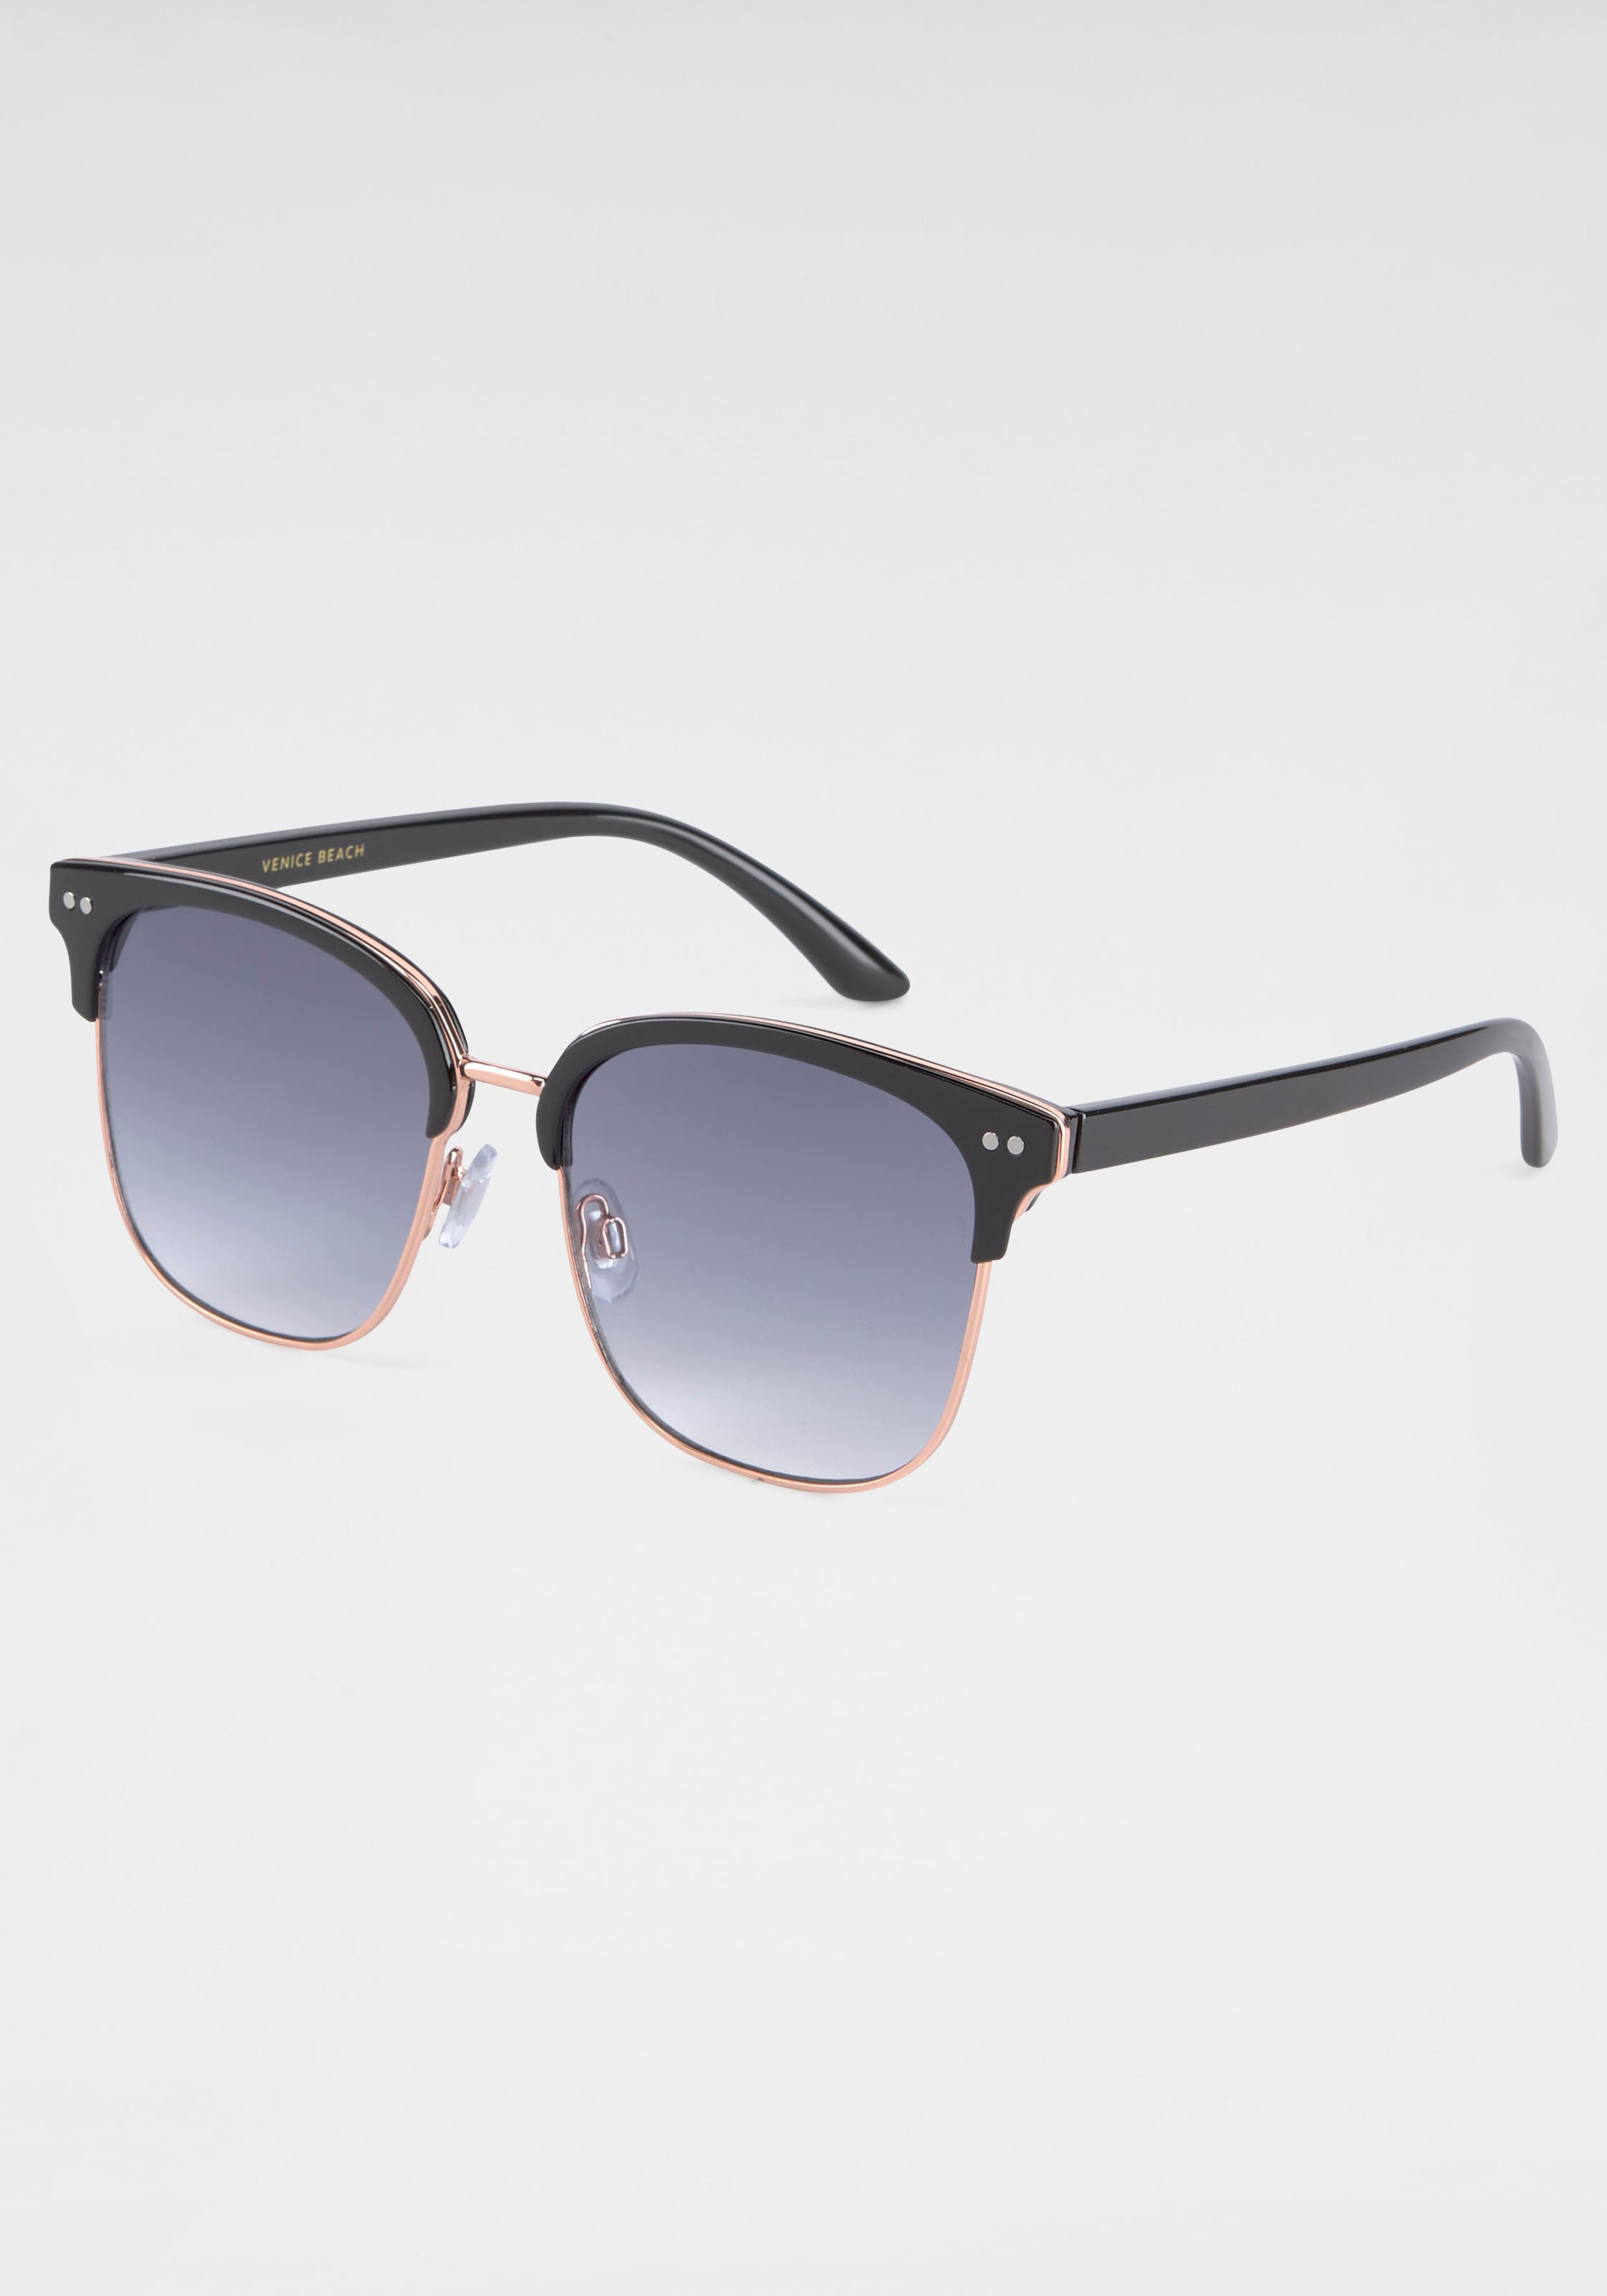 ♕ BACK IN Sonnenbrille, Eyewear gebogenen BLACK bestellen Gläsern mit versandkostenfrei